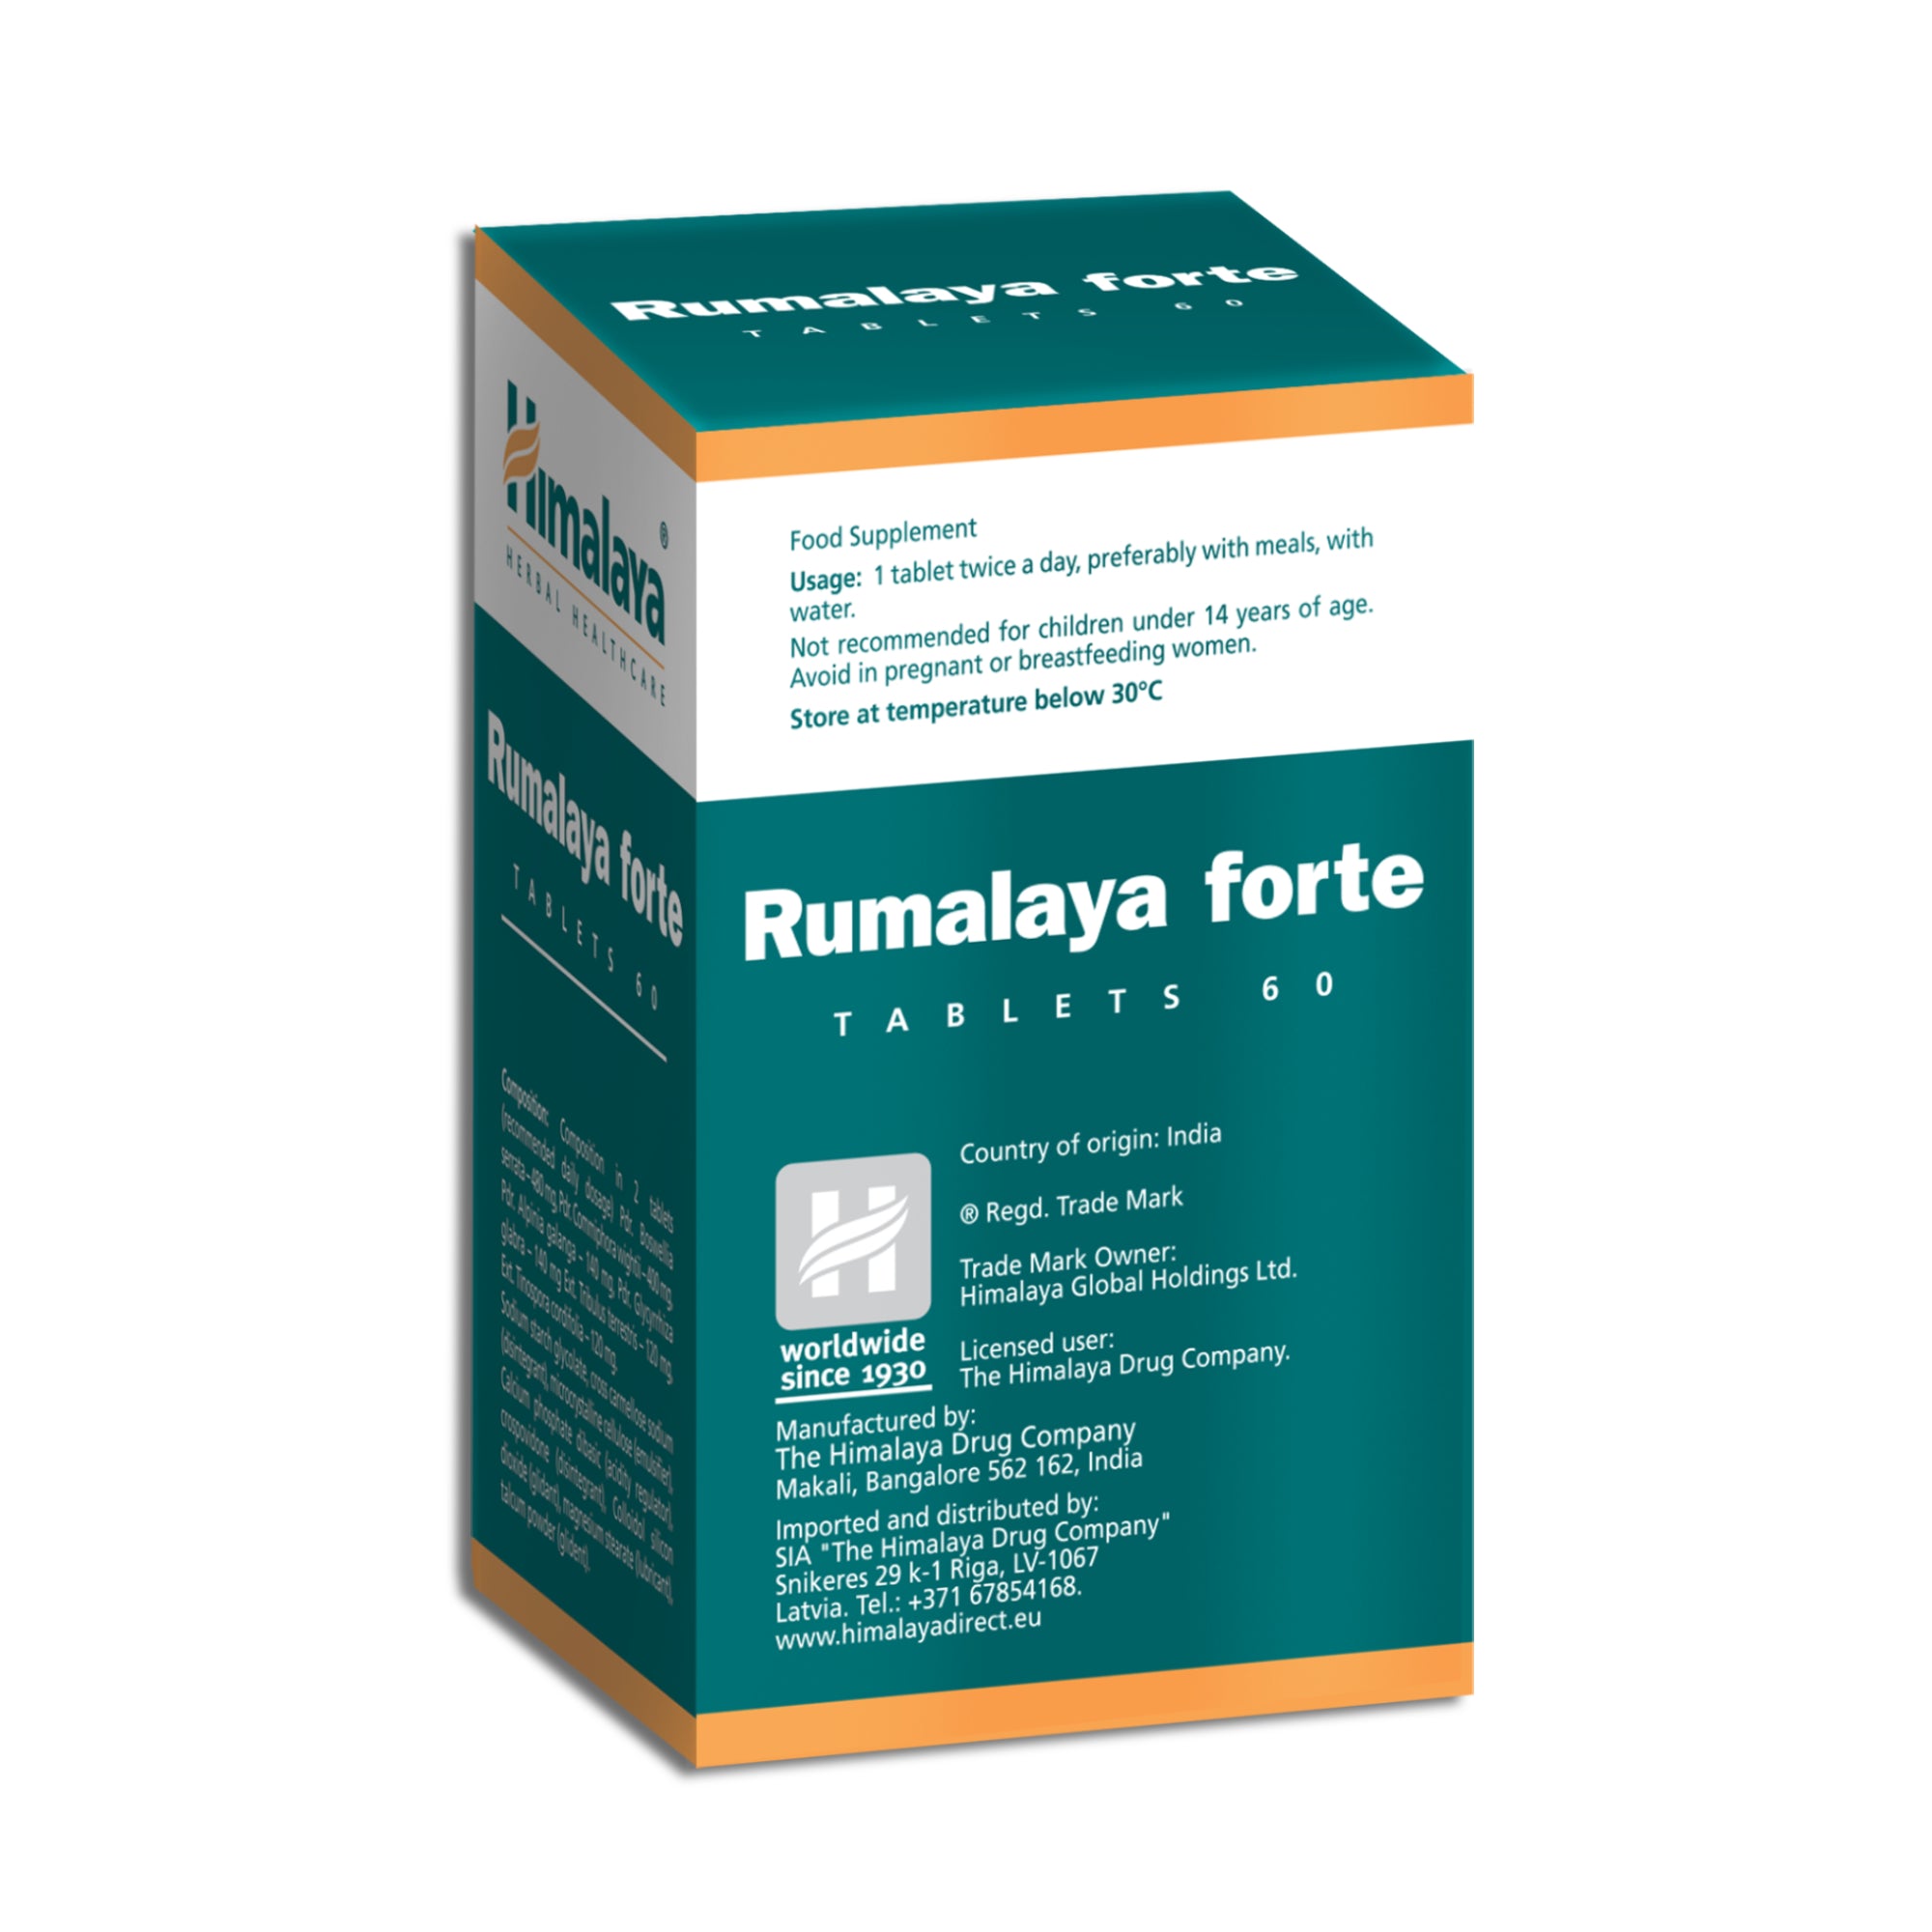 Himalaya Rumalaya forte - 60 Tablets